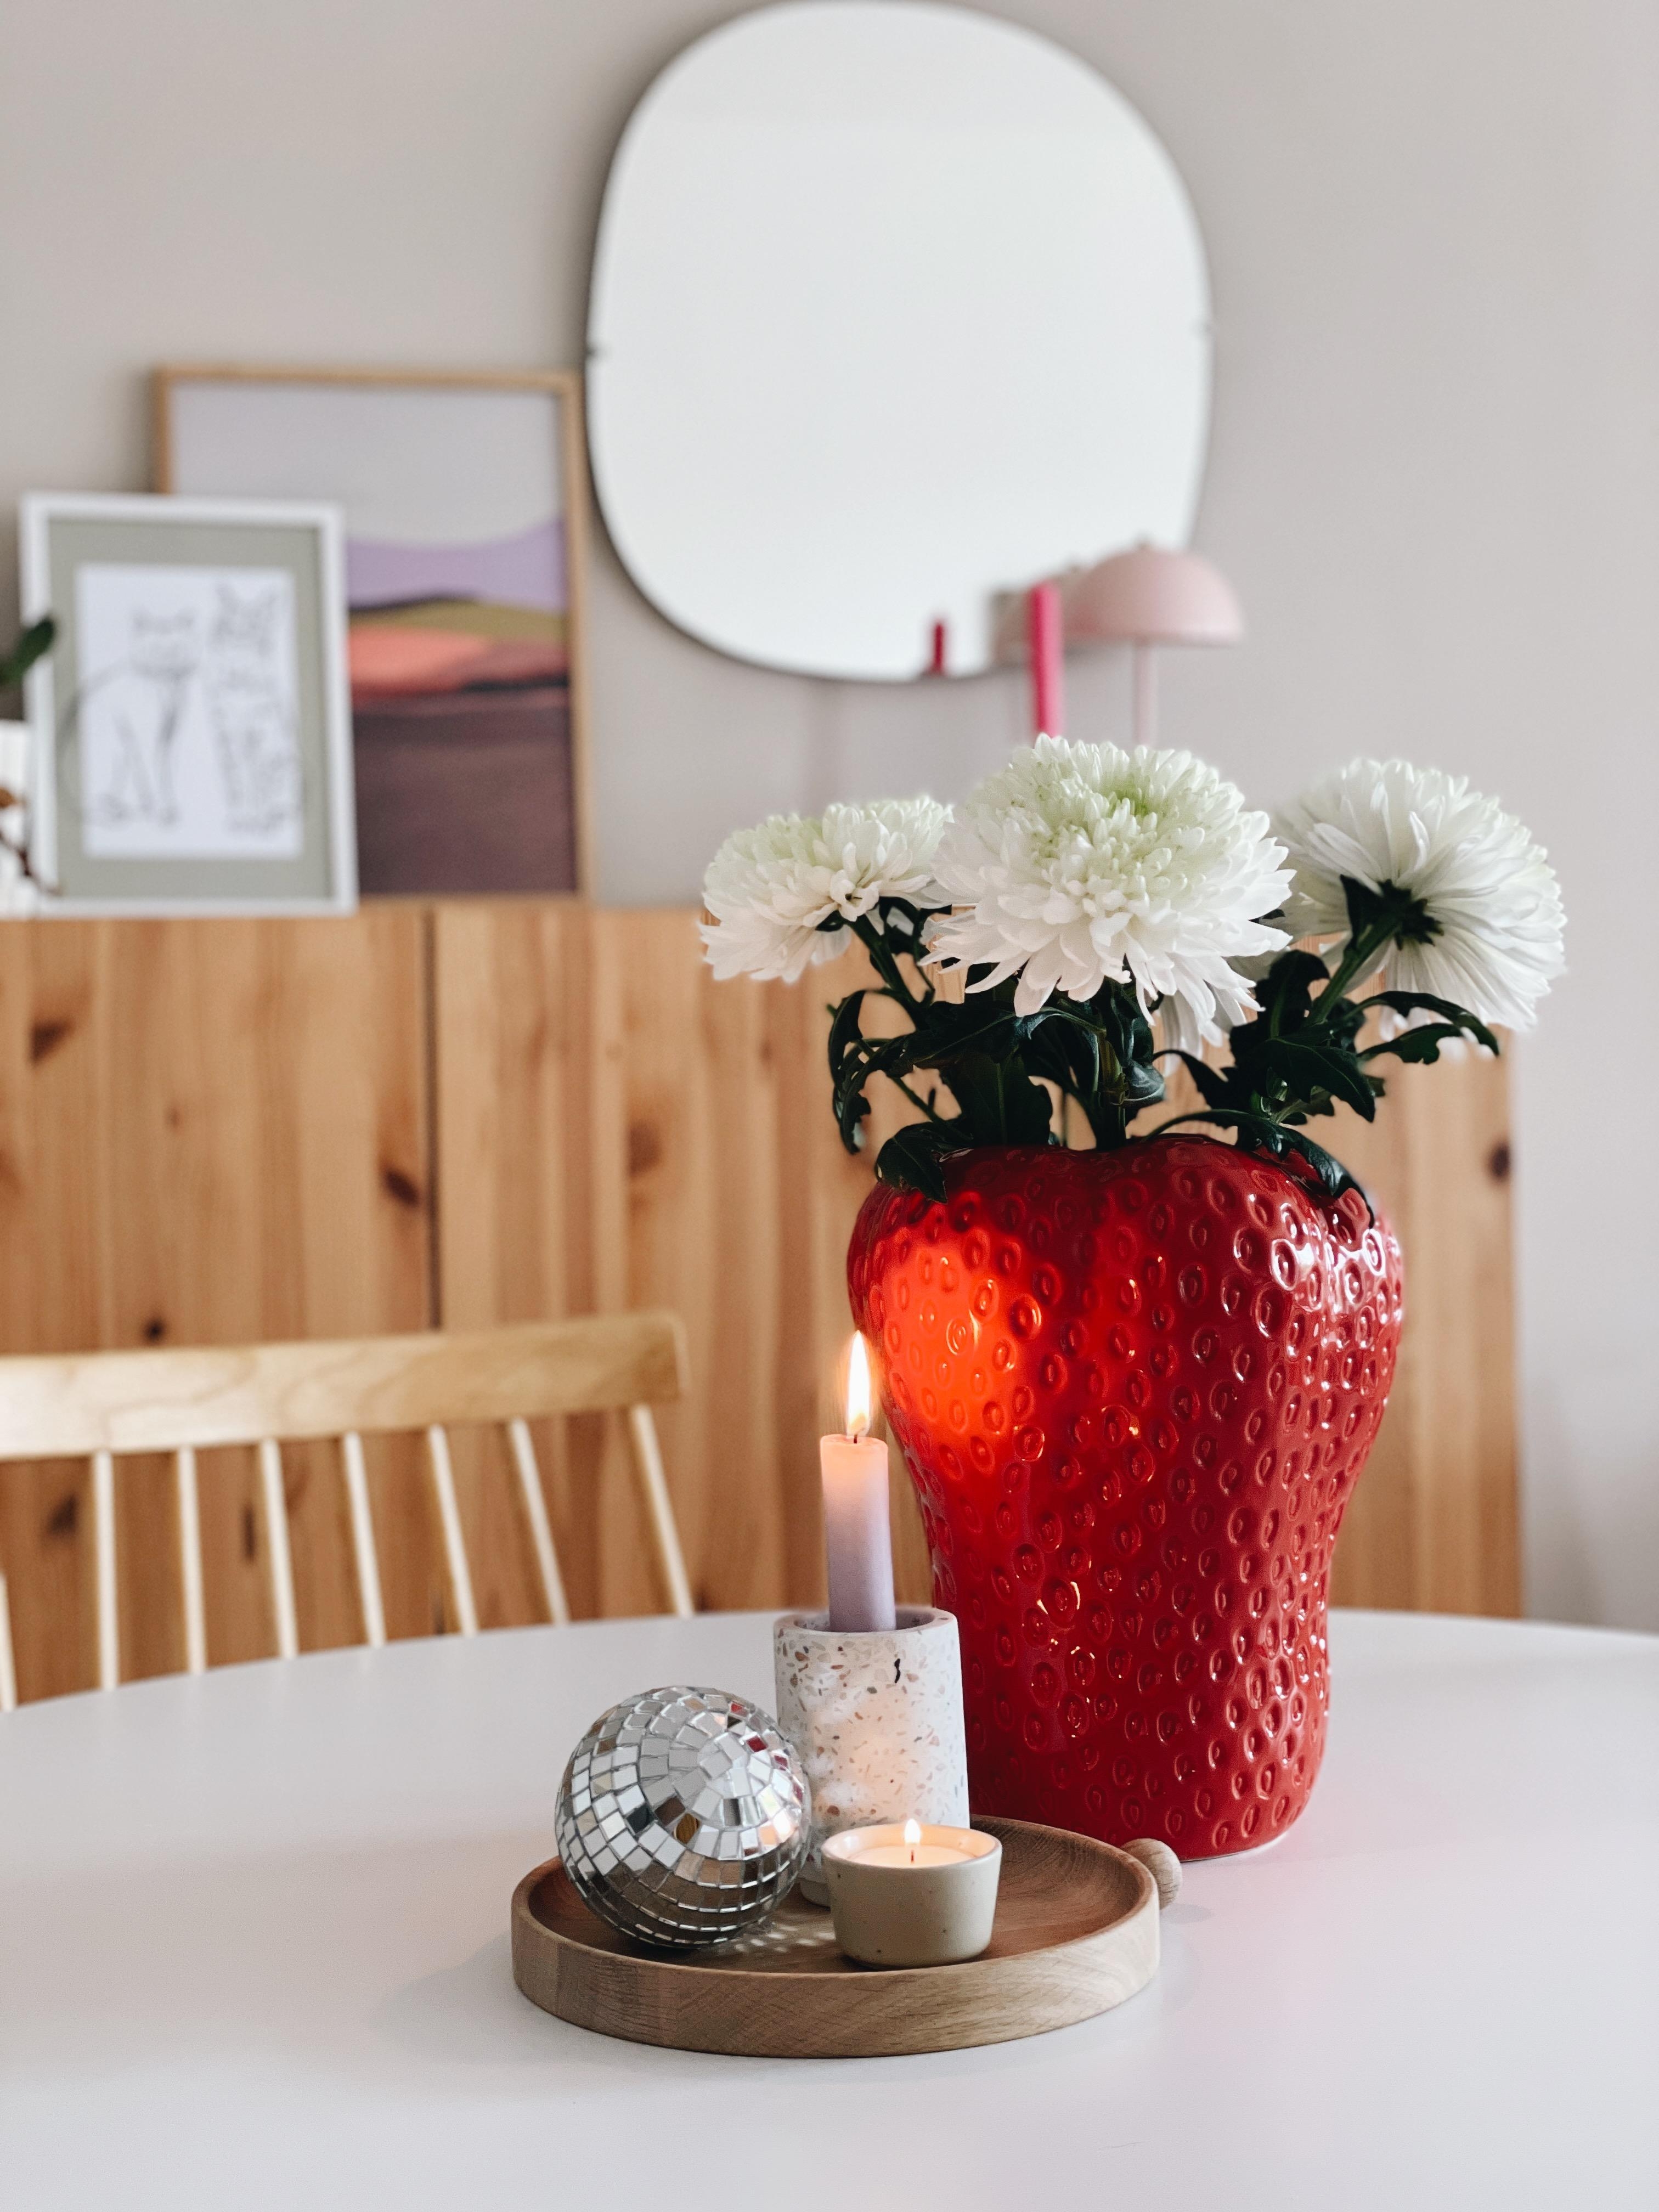 🍓🪩
#erdbeervase #freshflowers #decoration #couchliebt #wohnzimmer #details #farben